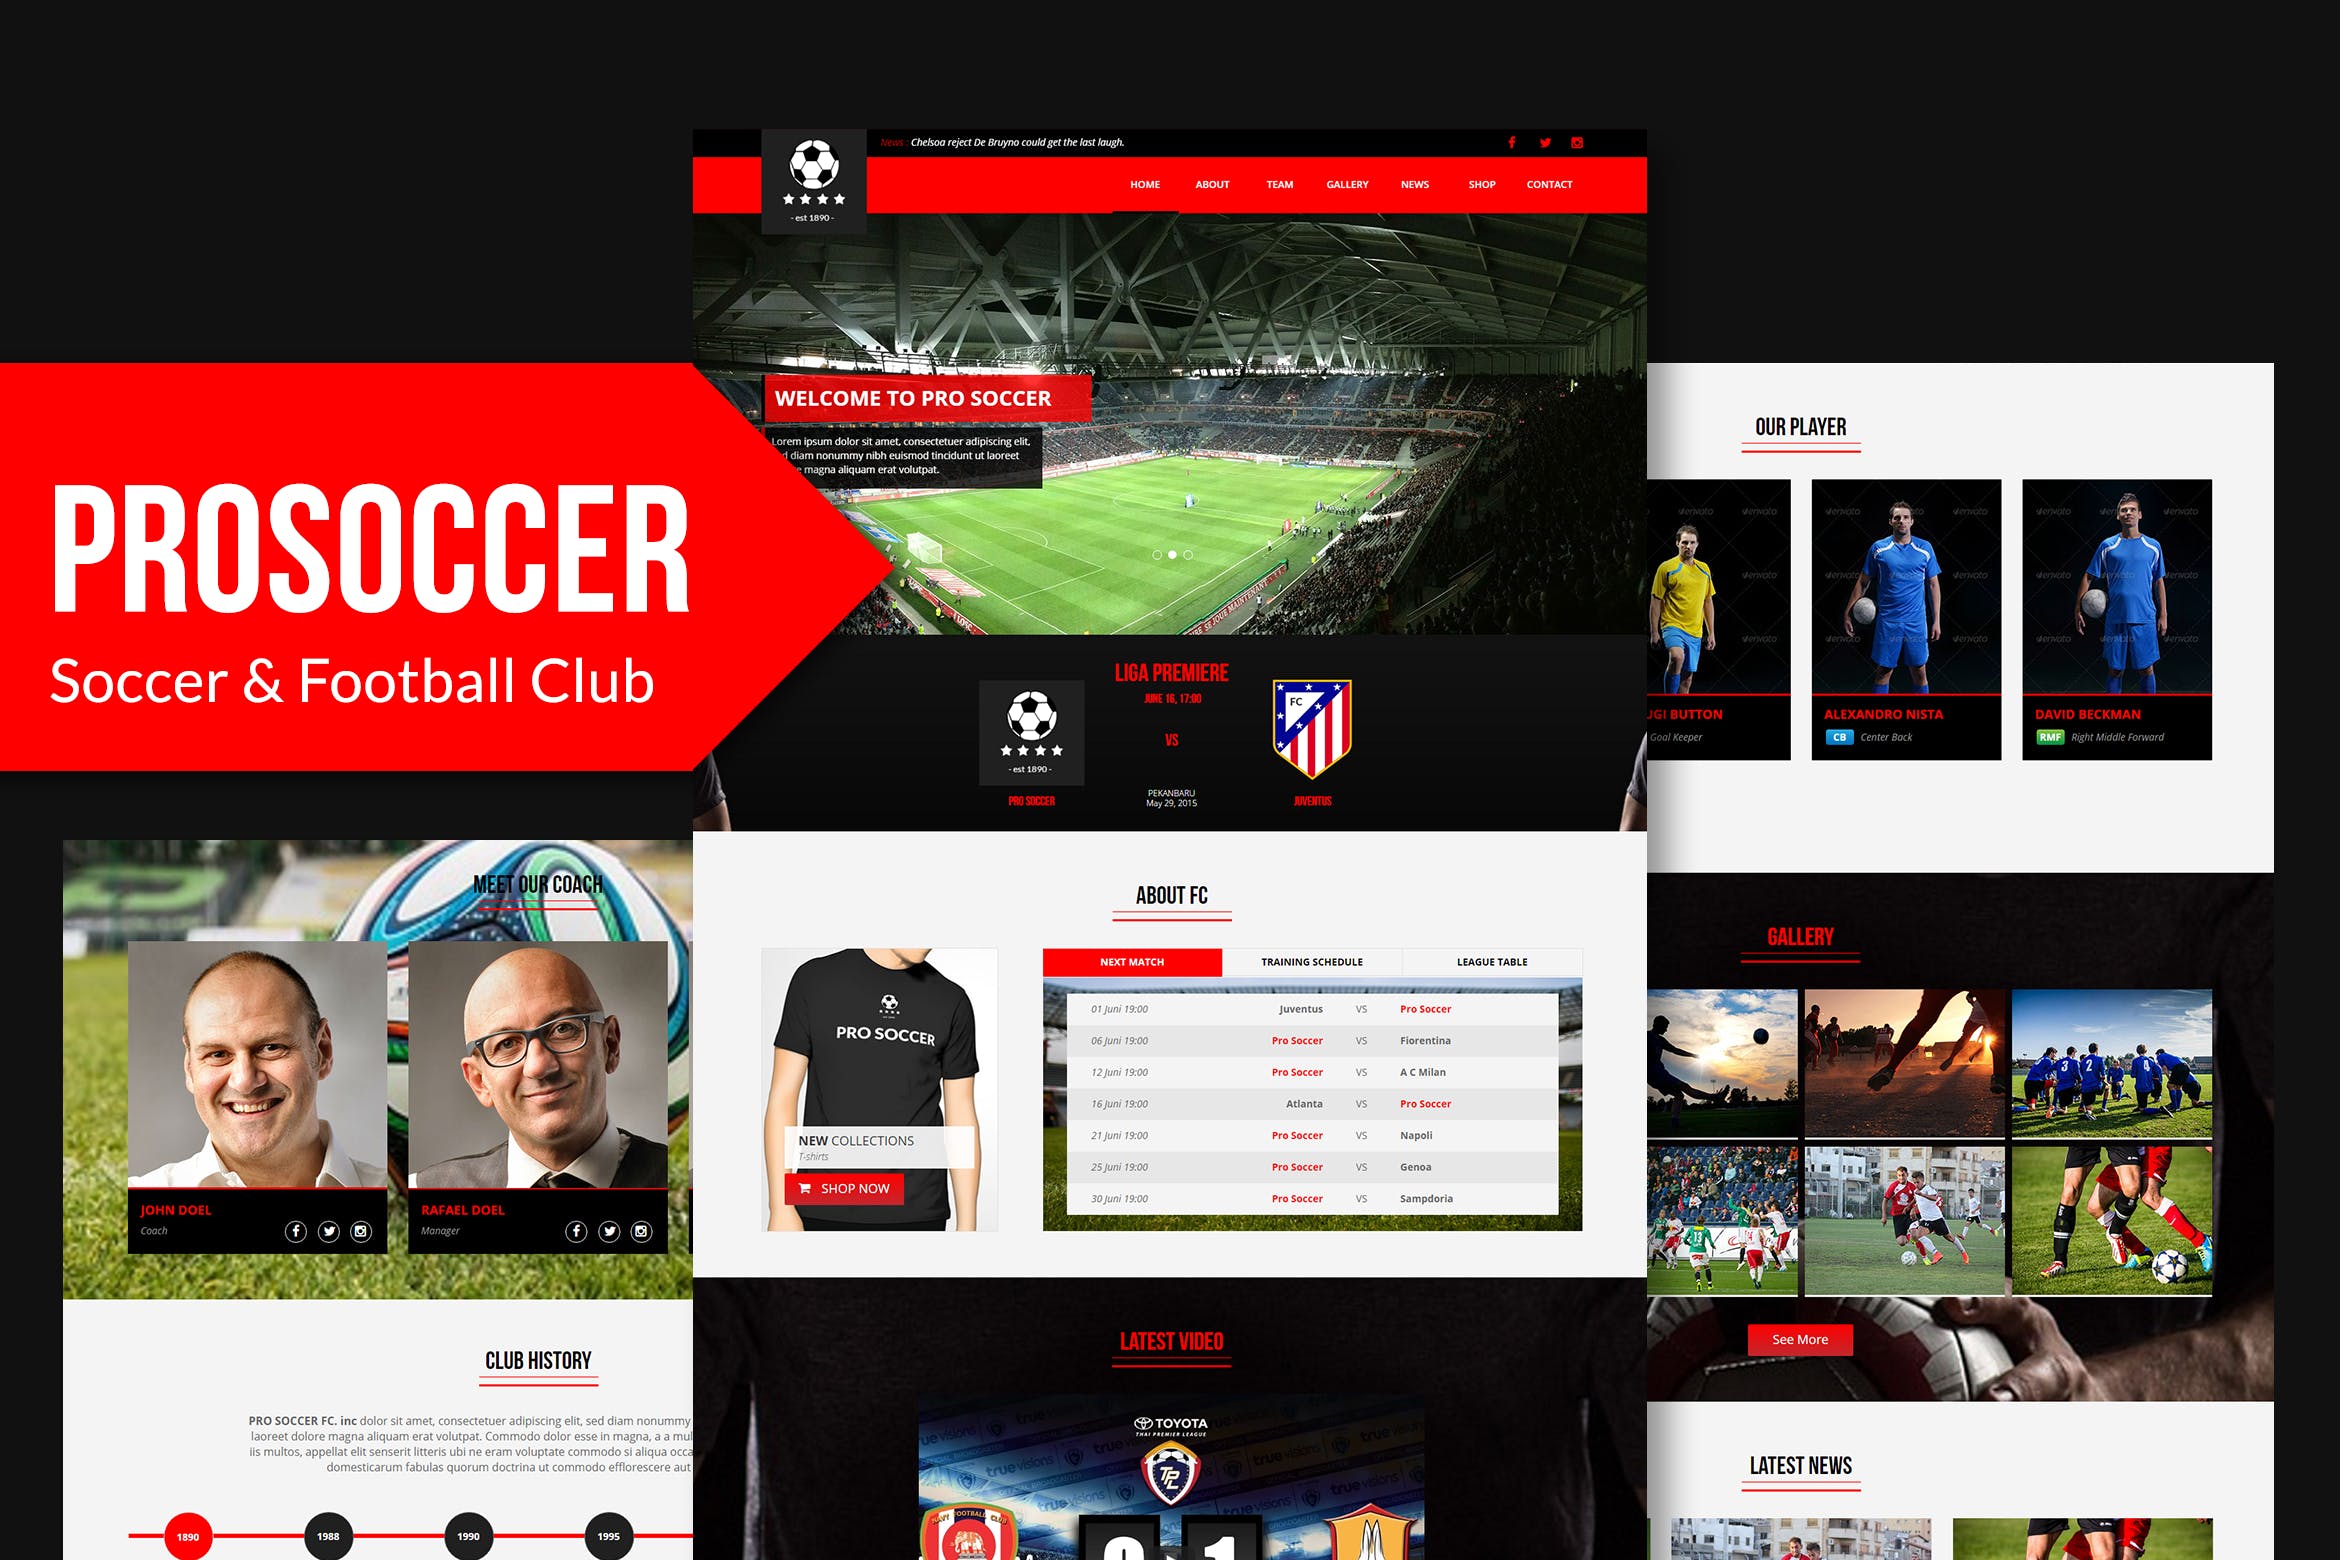 足球俱乐部网站设计Muse模板第一素材精选 Pro Soccer – Football & Soccer Club Muse Template插图